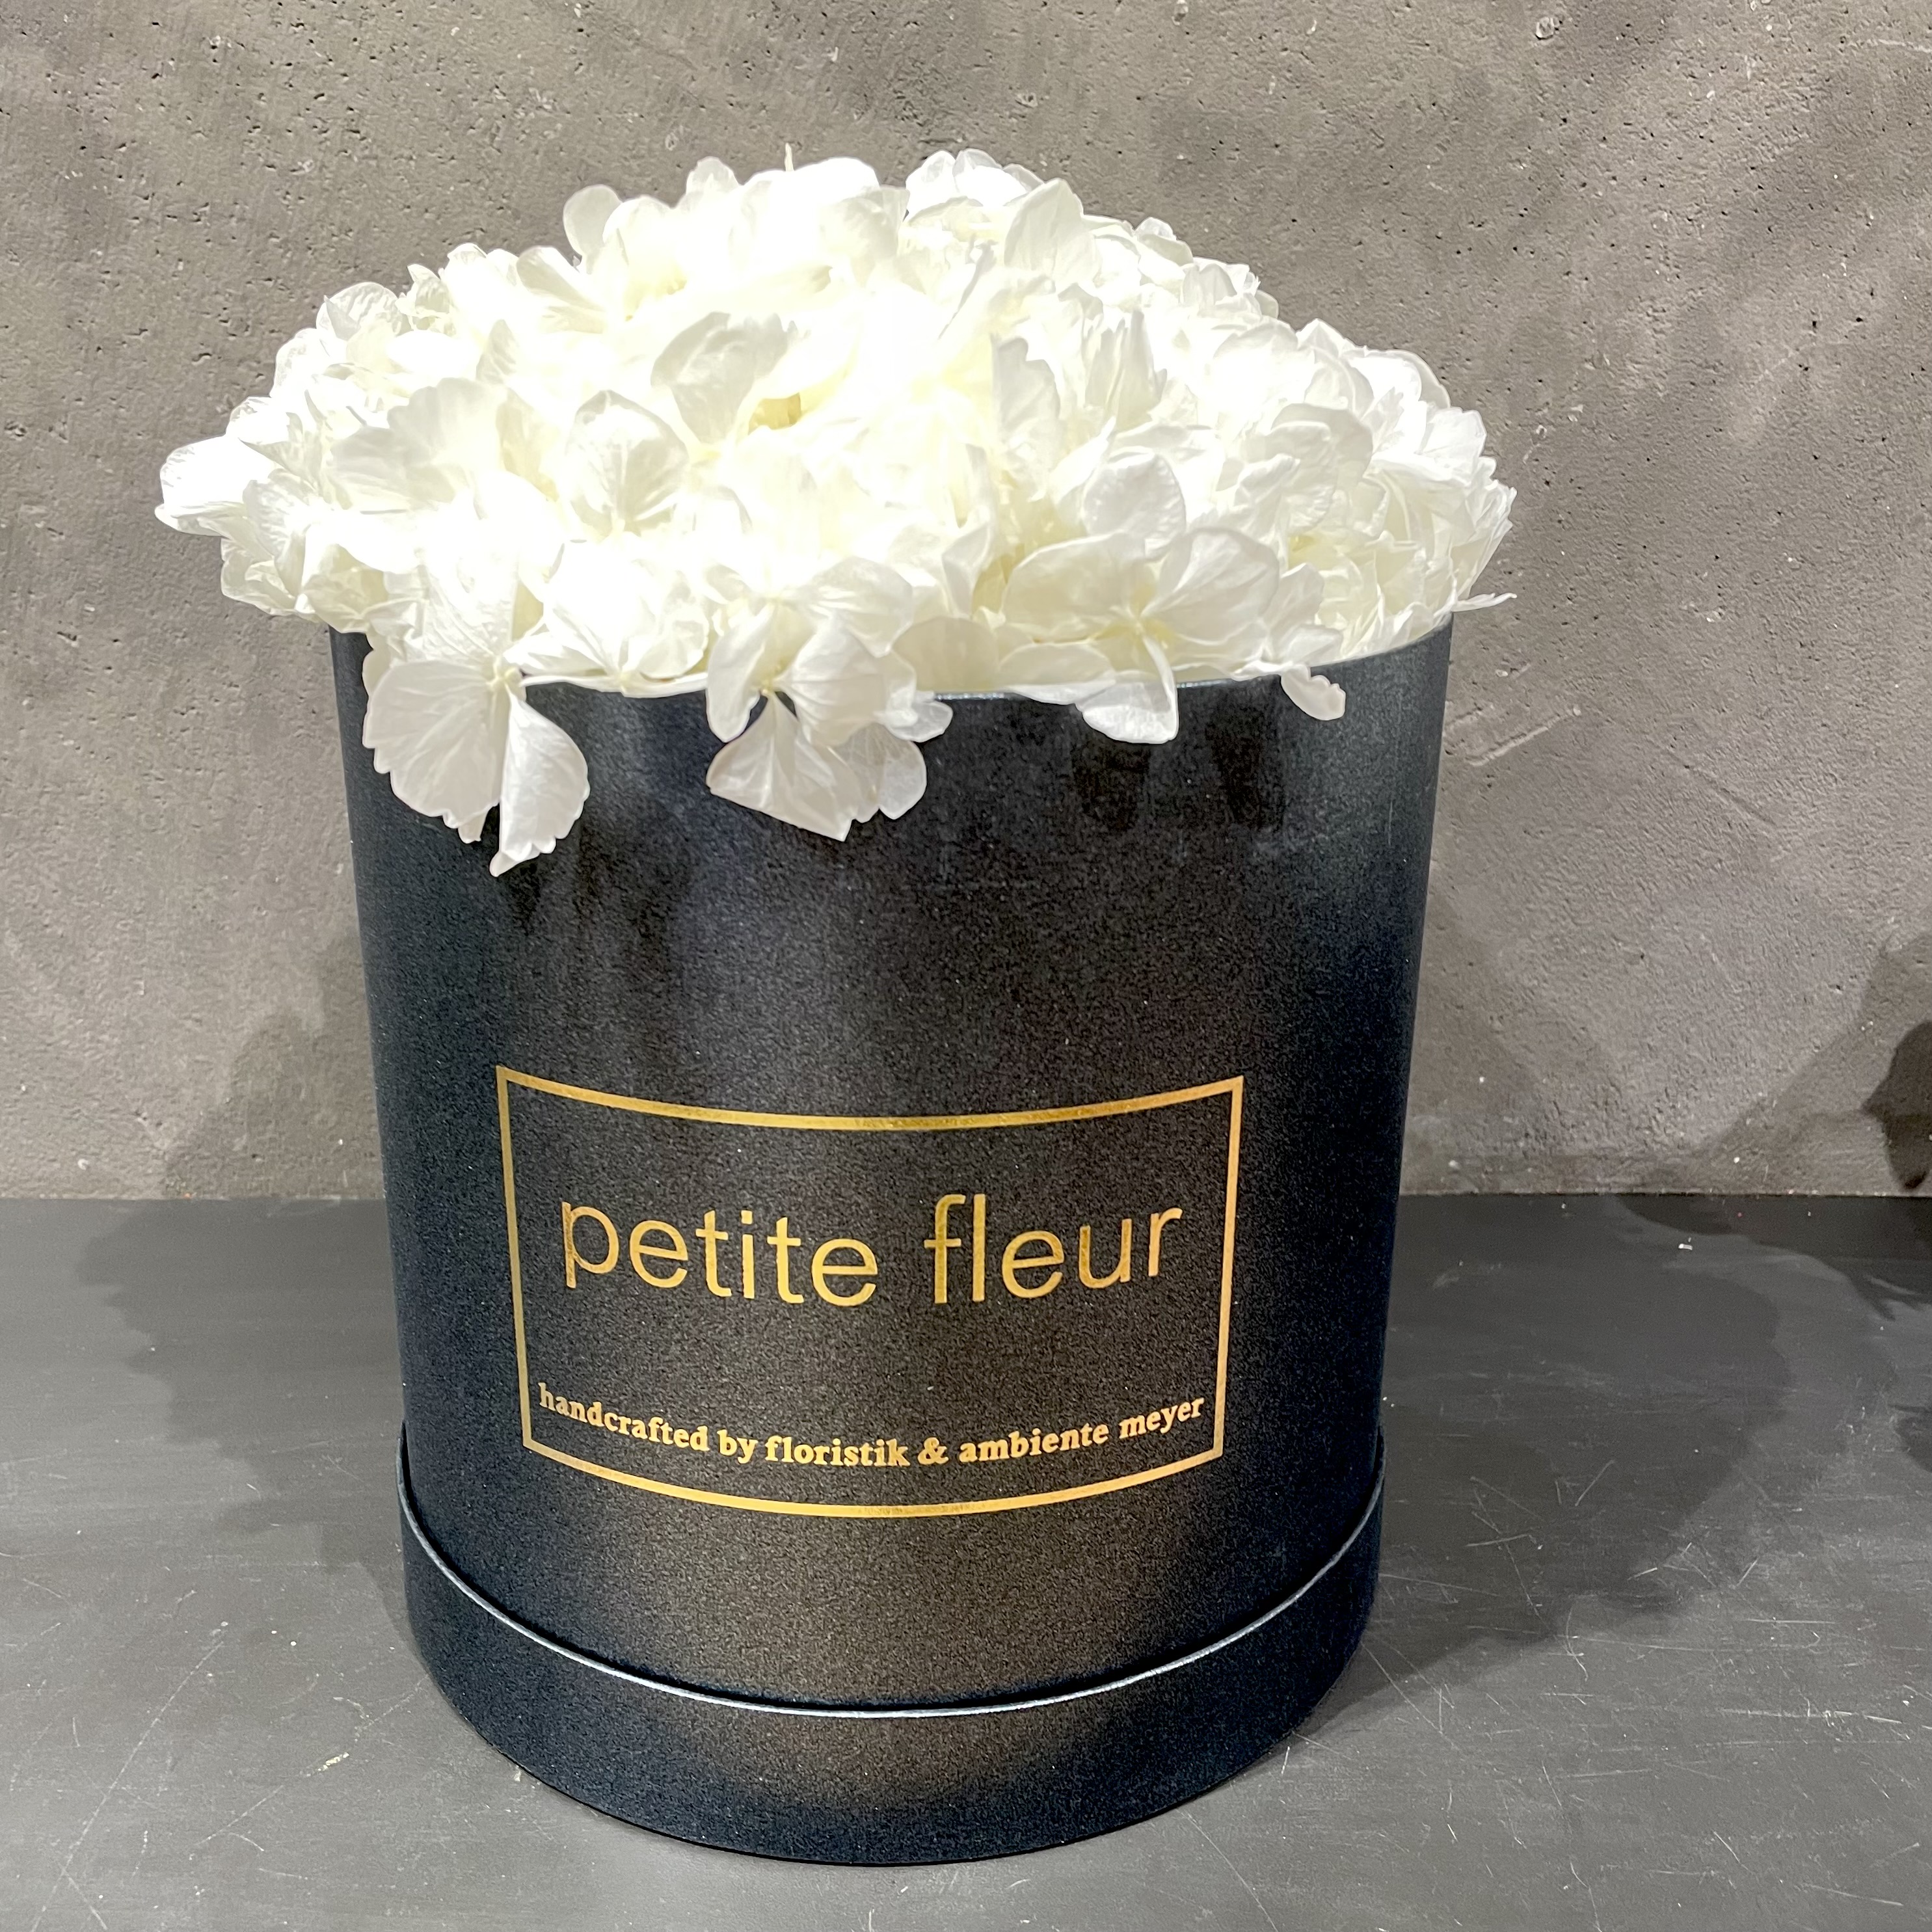 Petite Fleur Flowerbox L Infinity Hortensien in black-satin Gold-Edition-Flowerbox 